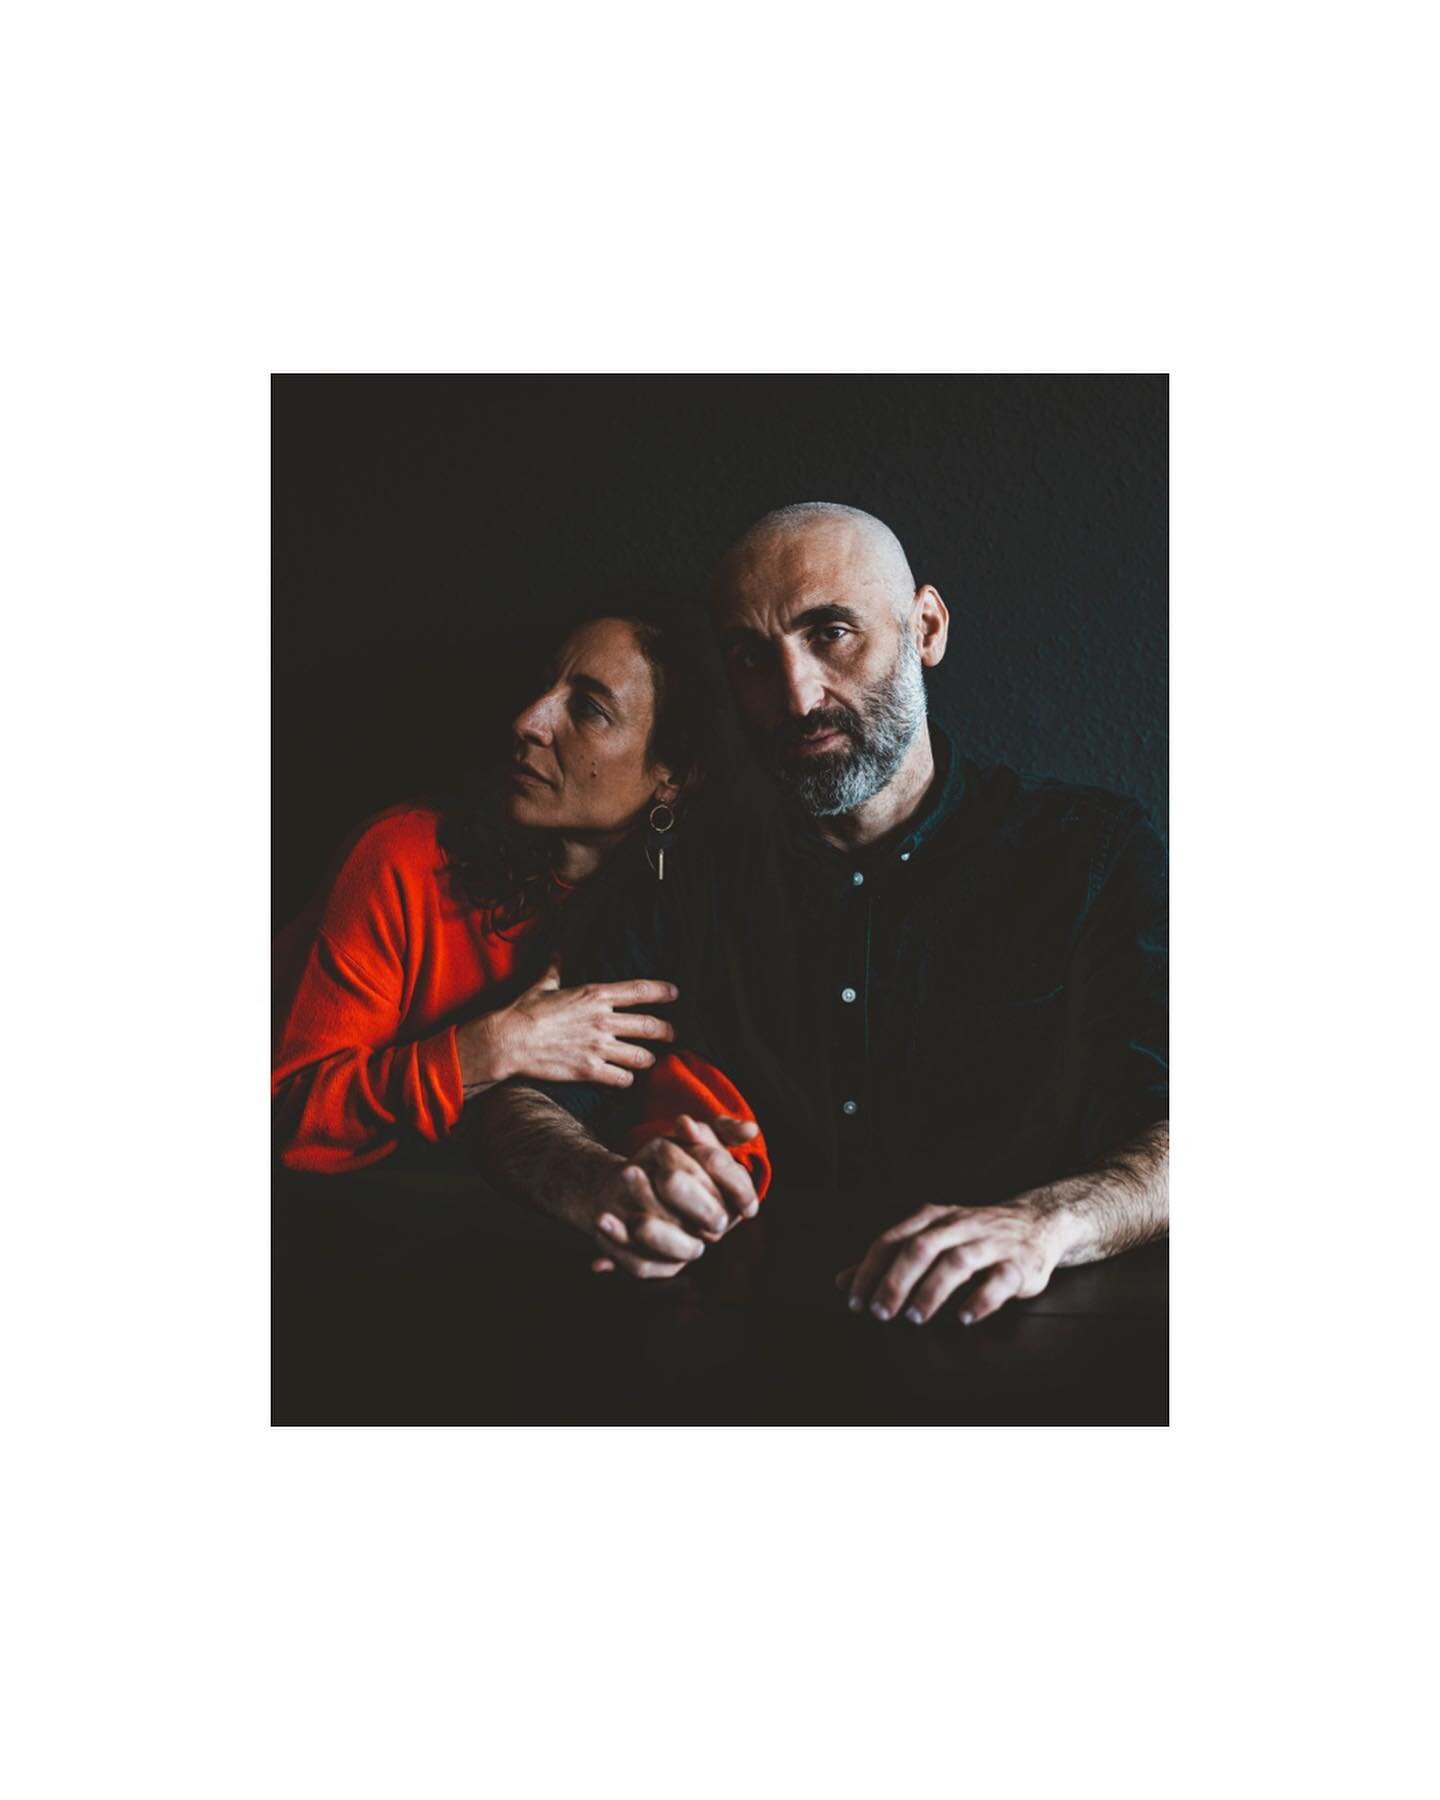 VERA &amp; CEM 

#Lifestyleproduktion mit unserem #Team @joseffson.photography 

 #Shoot #Blackt #ausdrucksstark #couple #portrait

@westend61 #Portrait #photoshoot #Ruhrgebiet #lifestyle #home
#peoplephotography #Advertising #kampagne #werbefotograf